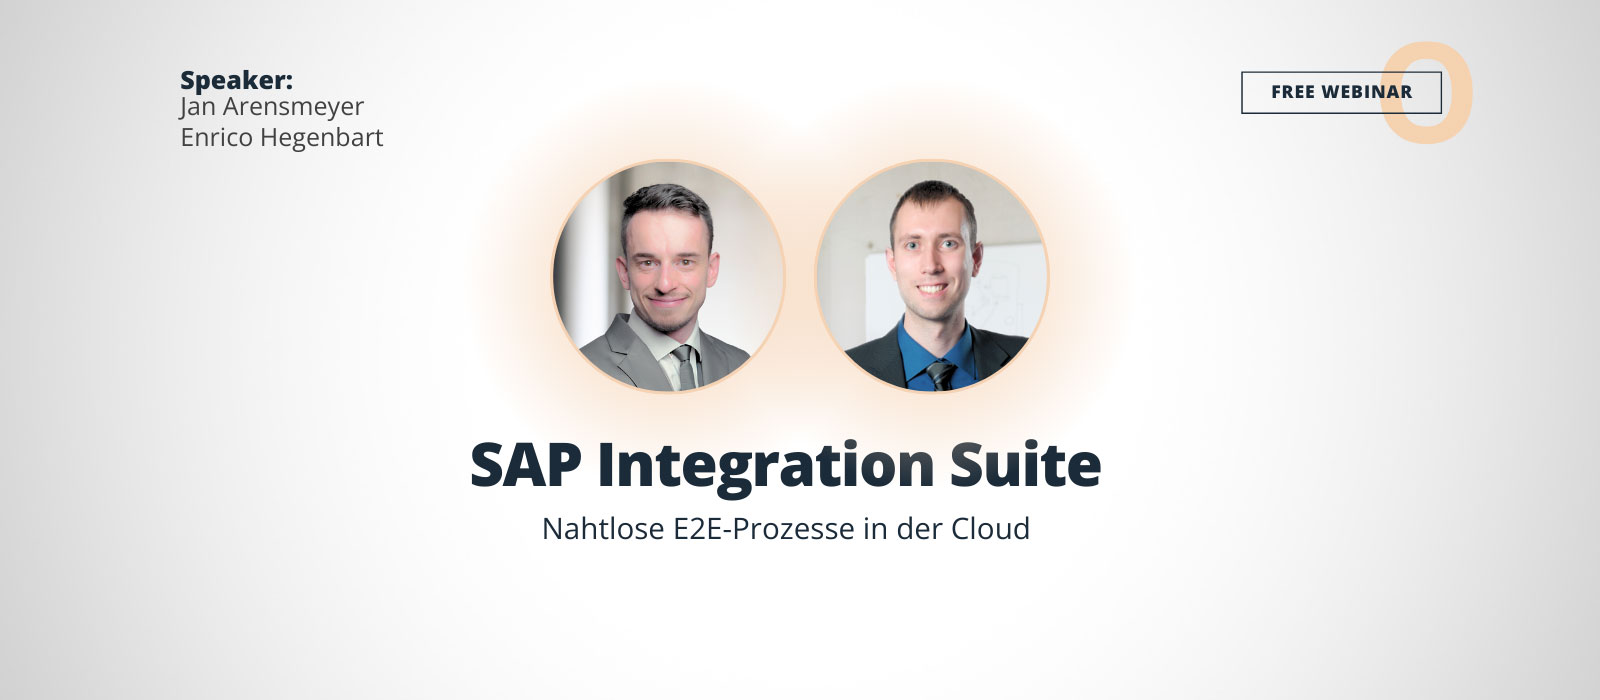 Banner für das Webinar 'SAP Integration Suite – Nahtlose E2E-Prozesse in der Cloud' mit Jan Arensmeyer und Enrico Hegenbart. Portraits von Jan Arensmeyer und Enrico Hegenbart sind prominent abgebildet, darunter steht der vollständige Titel des Webinars in klarer Schrift.